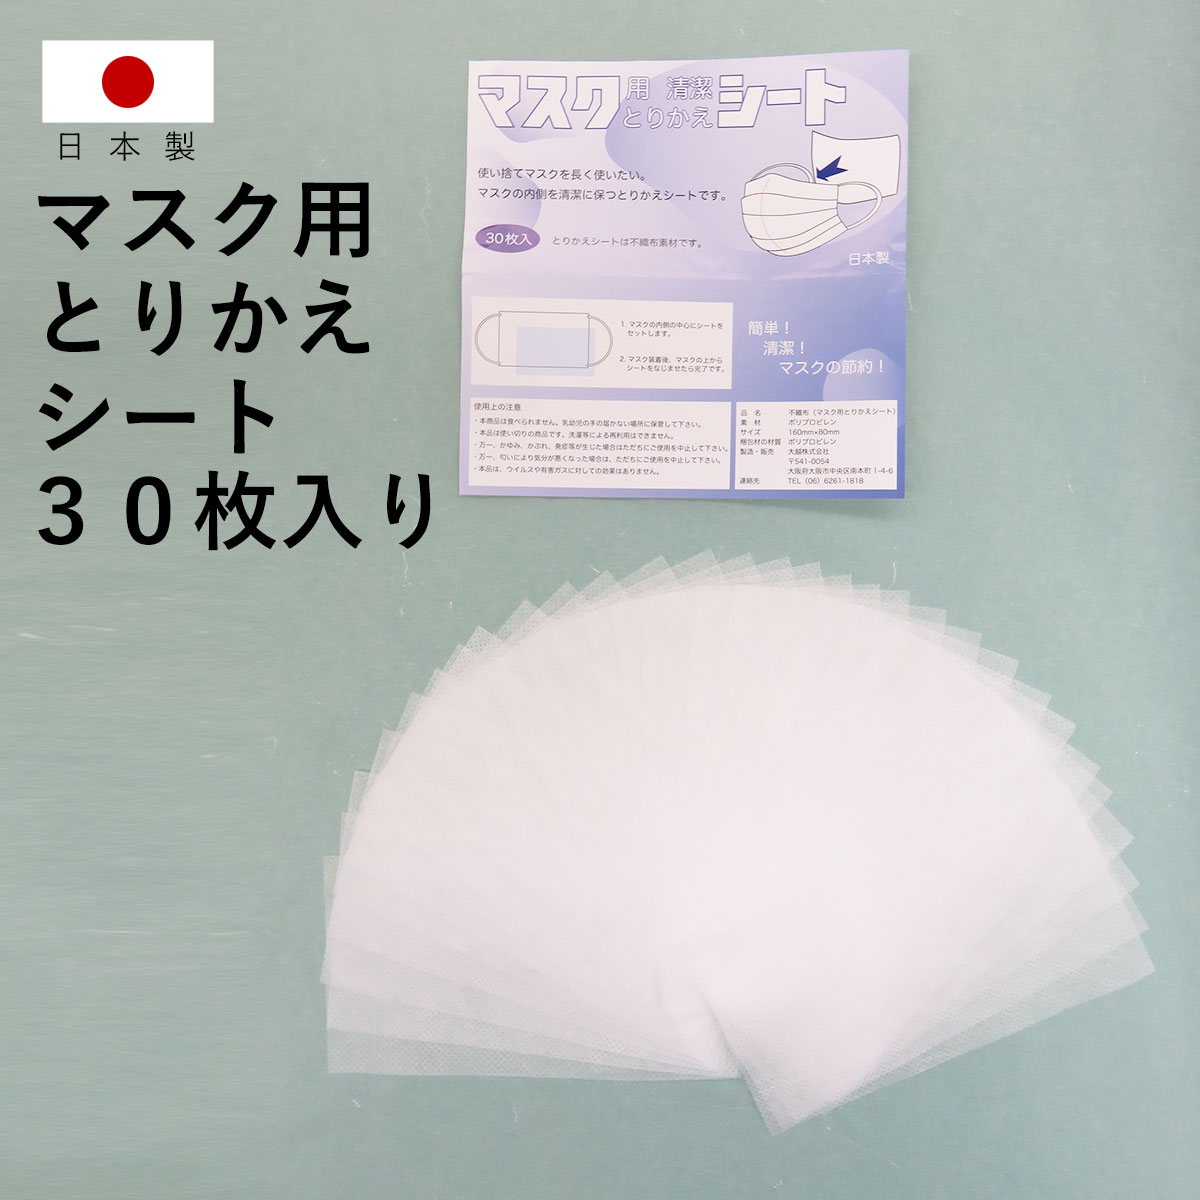 【 日本製 】マスク用 とりかえシート 30枚 セット フィルター 不織布 布マスク 使い捨て 清潔 衛生